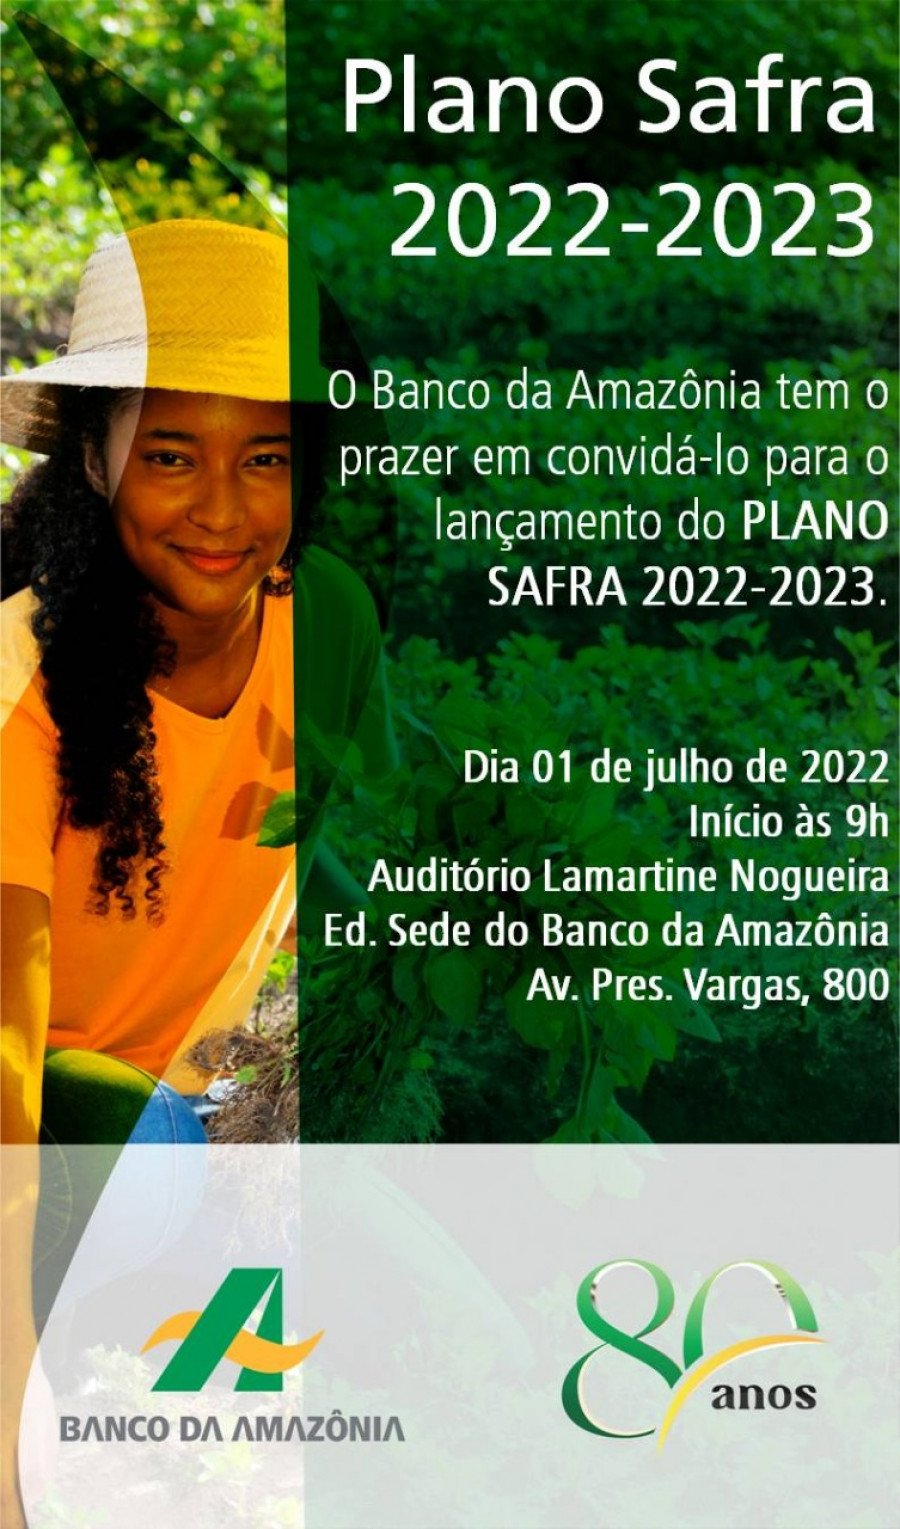 Novo Plano Safra 2022/2023 do Banco da Amazônia vai destinar R$ 9 bi para Amazônia Legal (Foto: Divulgação)